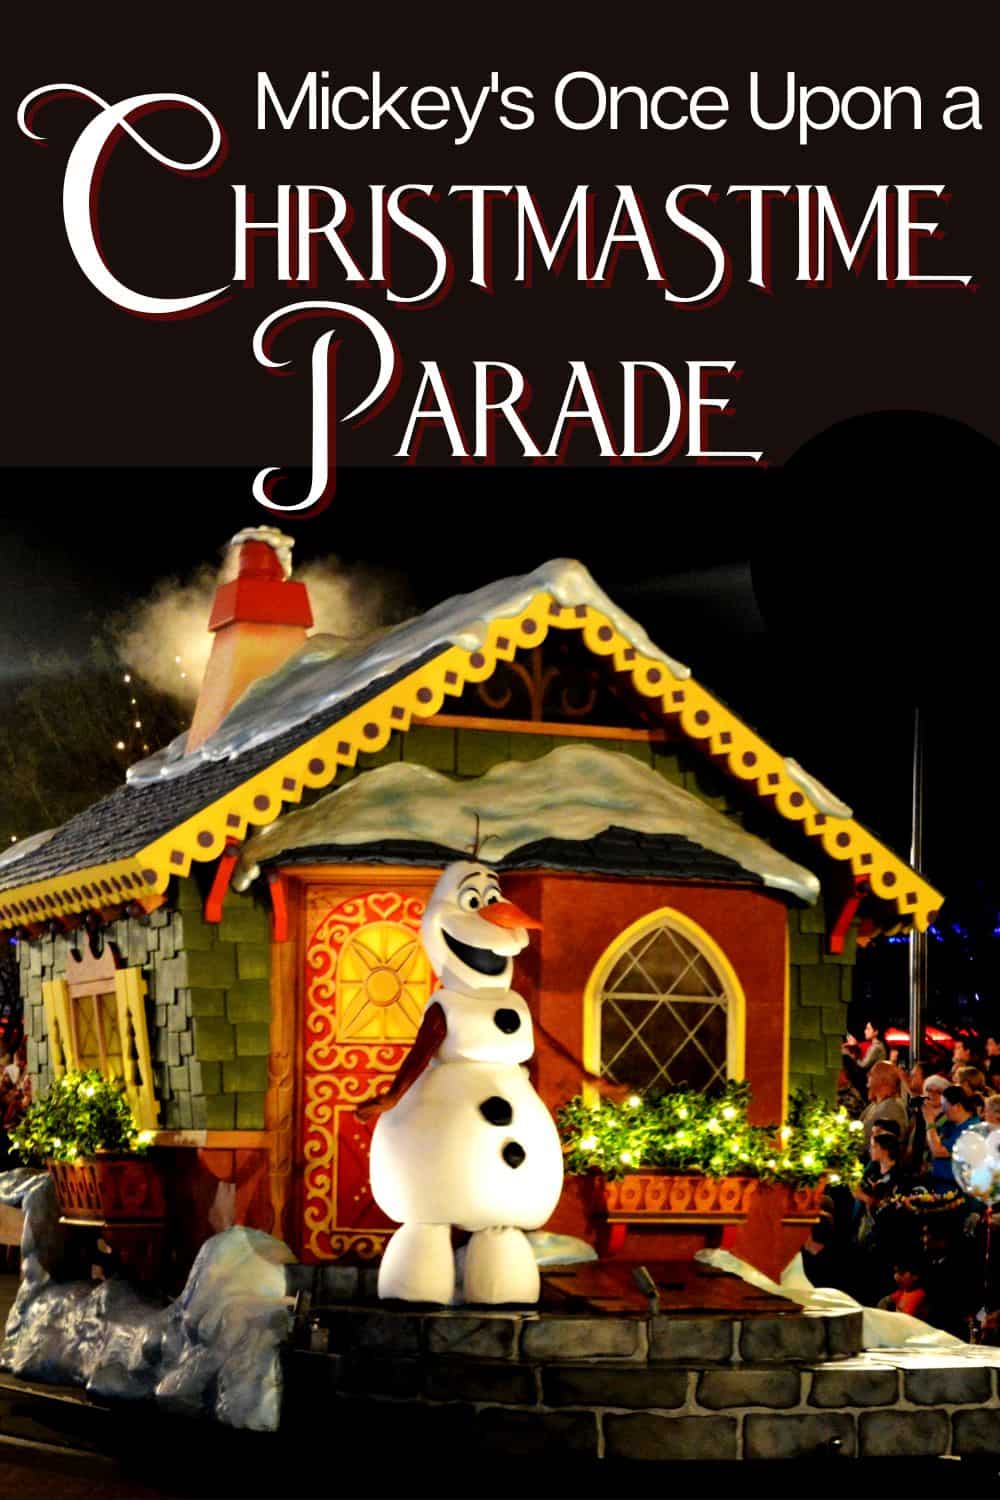 Disney Christmas Parade at Magic Kingdom